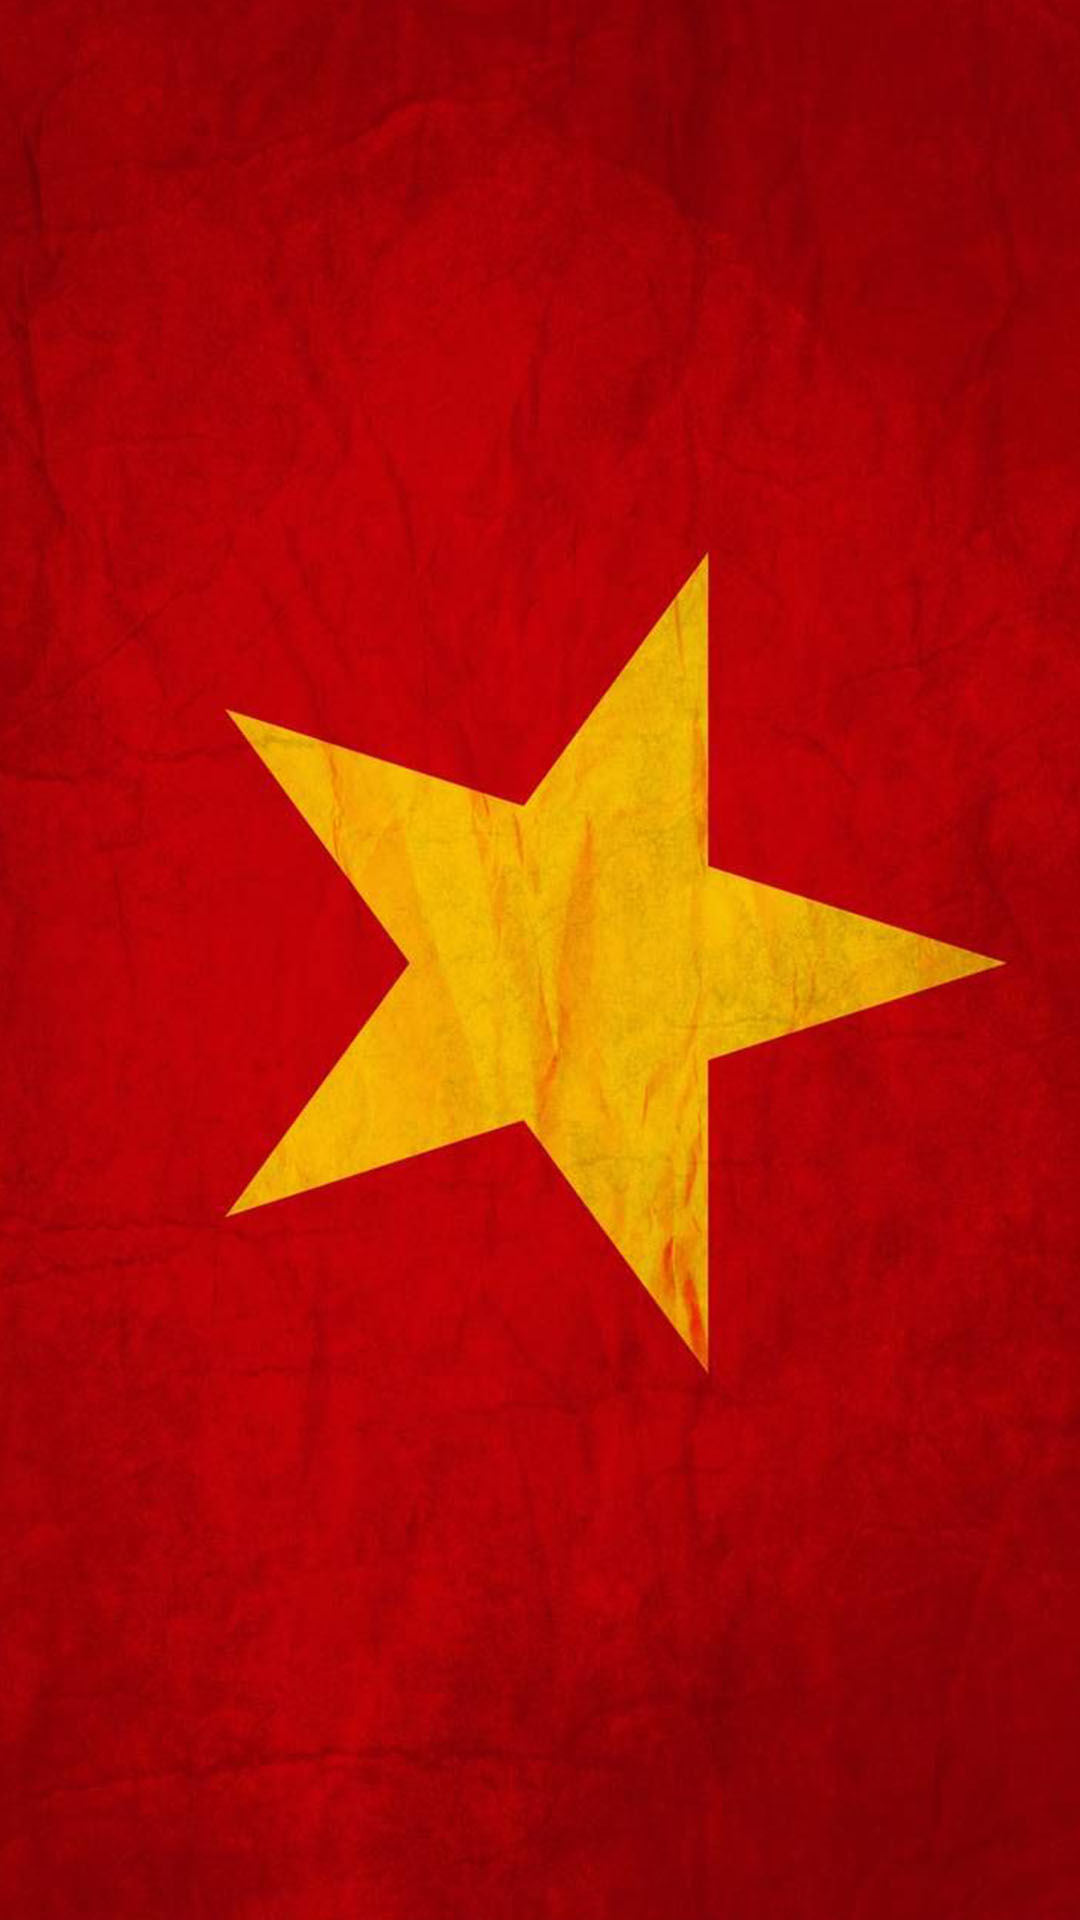 Hình Nền Cờ Việt Nam Đẹp: Hãy để hình nền cờ Việt Nam đẹp lung linh này trở thành niềm tự hào của bạn. Với sắc đỏ nồng nàn và những ngôi sao lấp lánh, hình nền này sẽ khiến bạn cảm thấy tự hào về quê hương mình. Đừng bỏ lỡ cơ hội đổi mới cho máy tính của bạn với hình nền này.